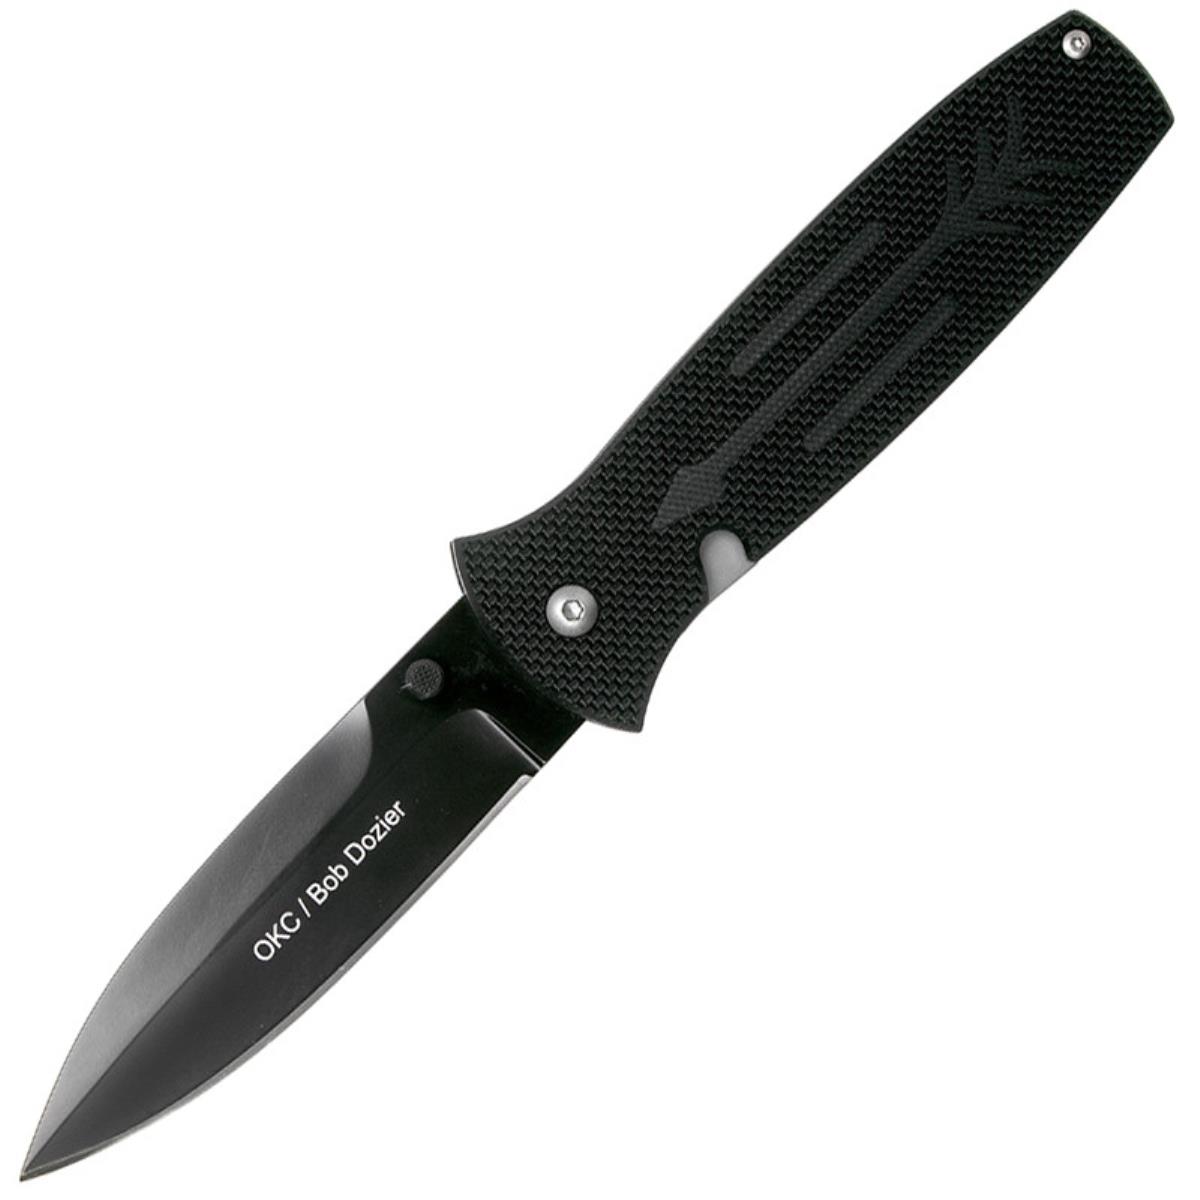 Нож OKC Dozier Arrow складн.,чёрная рукоять, G10, клинок D2, чёрное покрытие (9101)  ONTARIO нож с фиксированным клинком ontario rat 3 сталь 1095 carbon steel рукоять микарта tan black